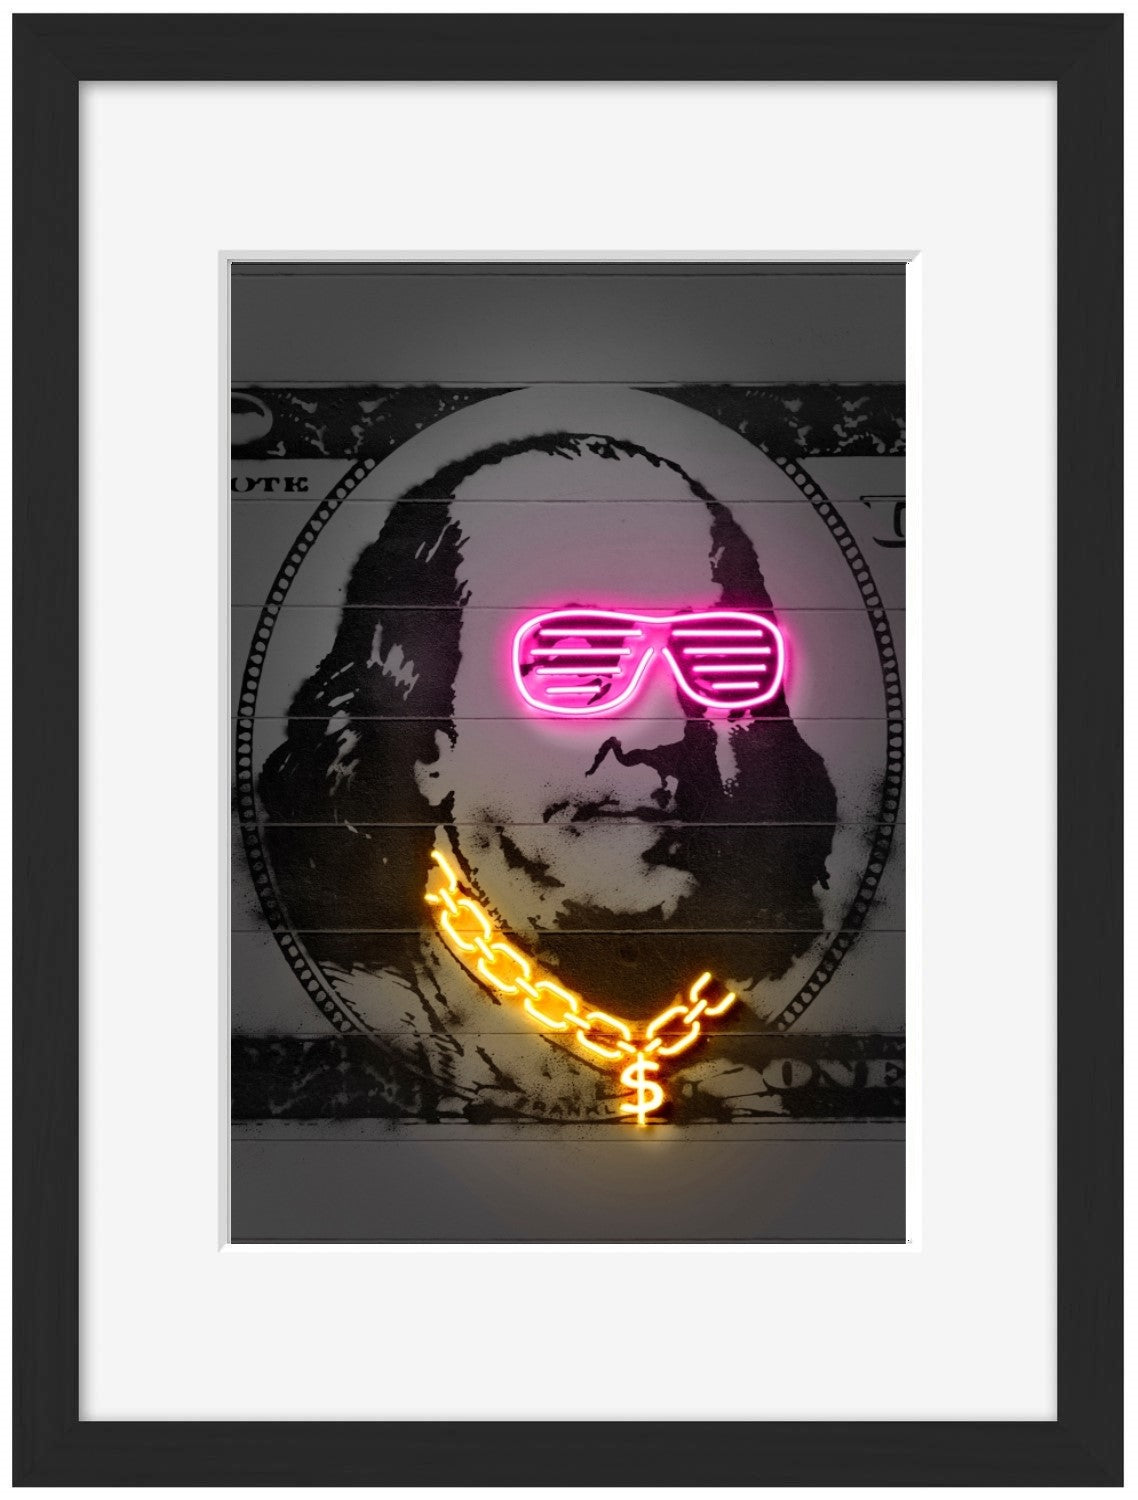 Franklin-neon-art, print-Framed Print-30 x 40 cm-BLUE SHAKER